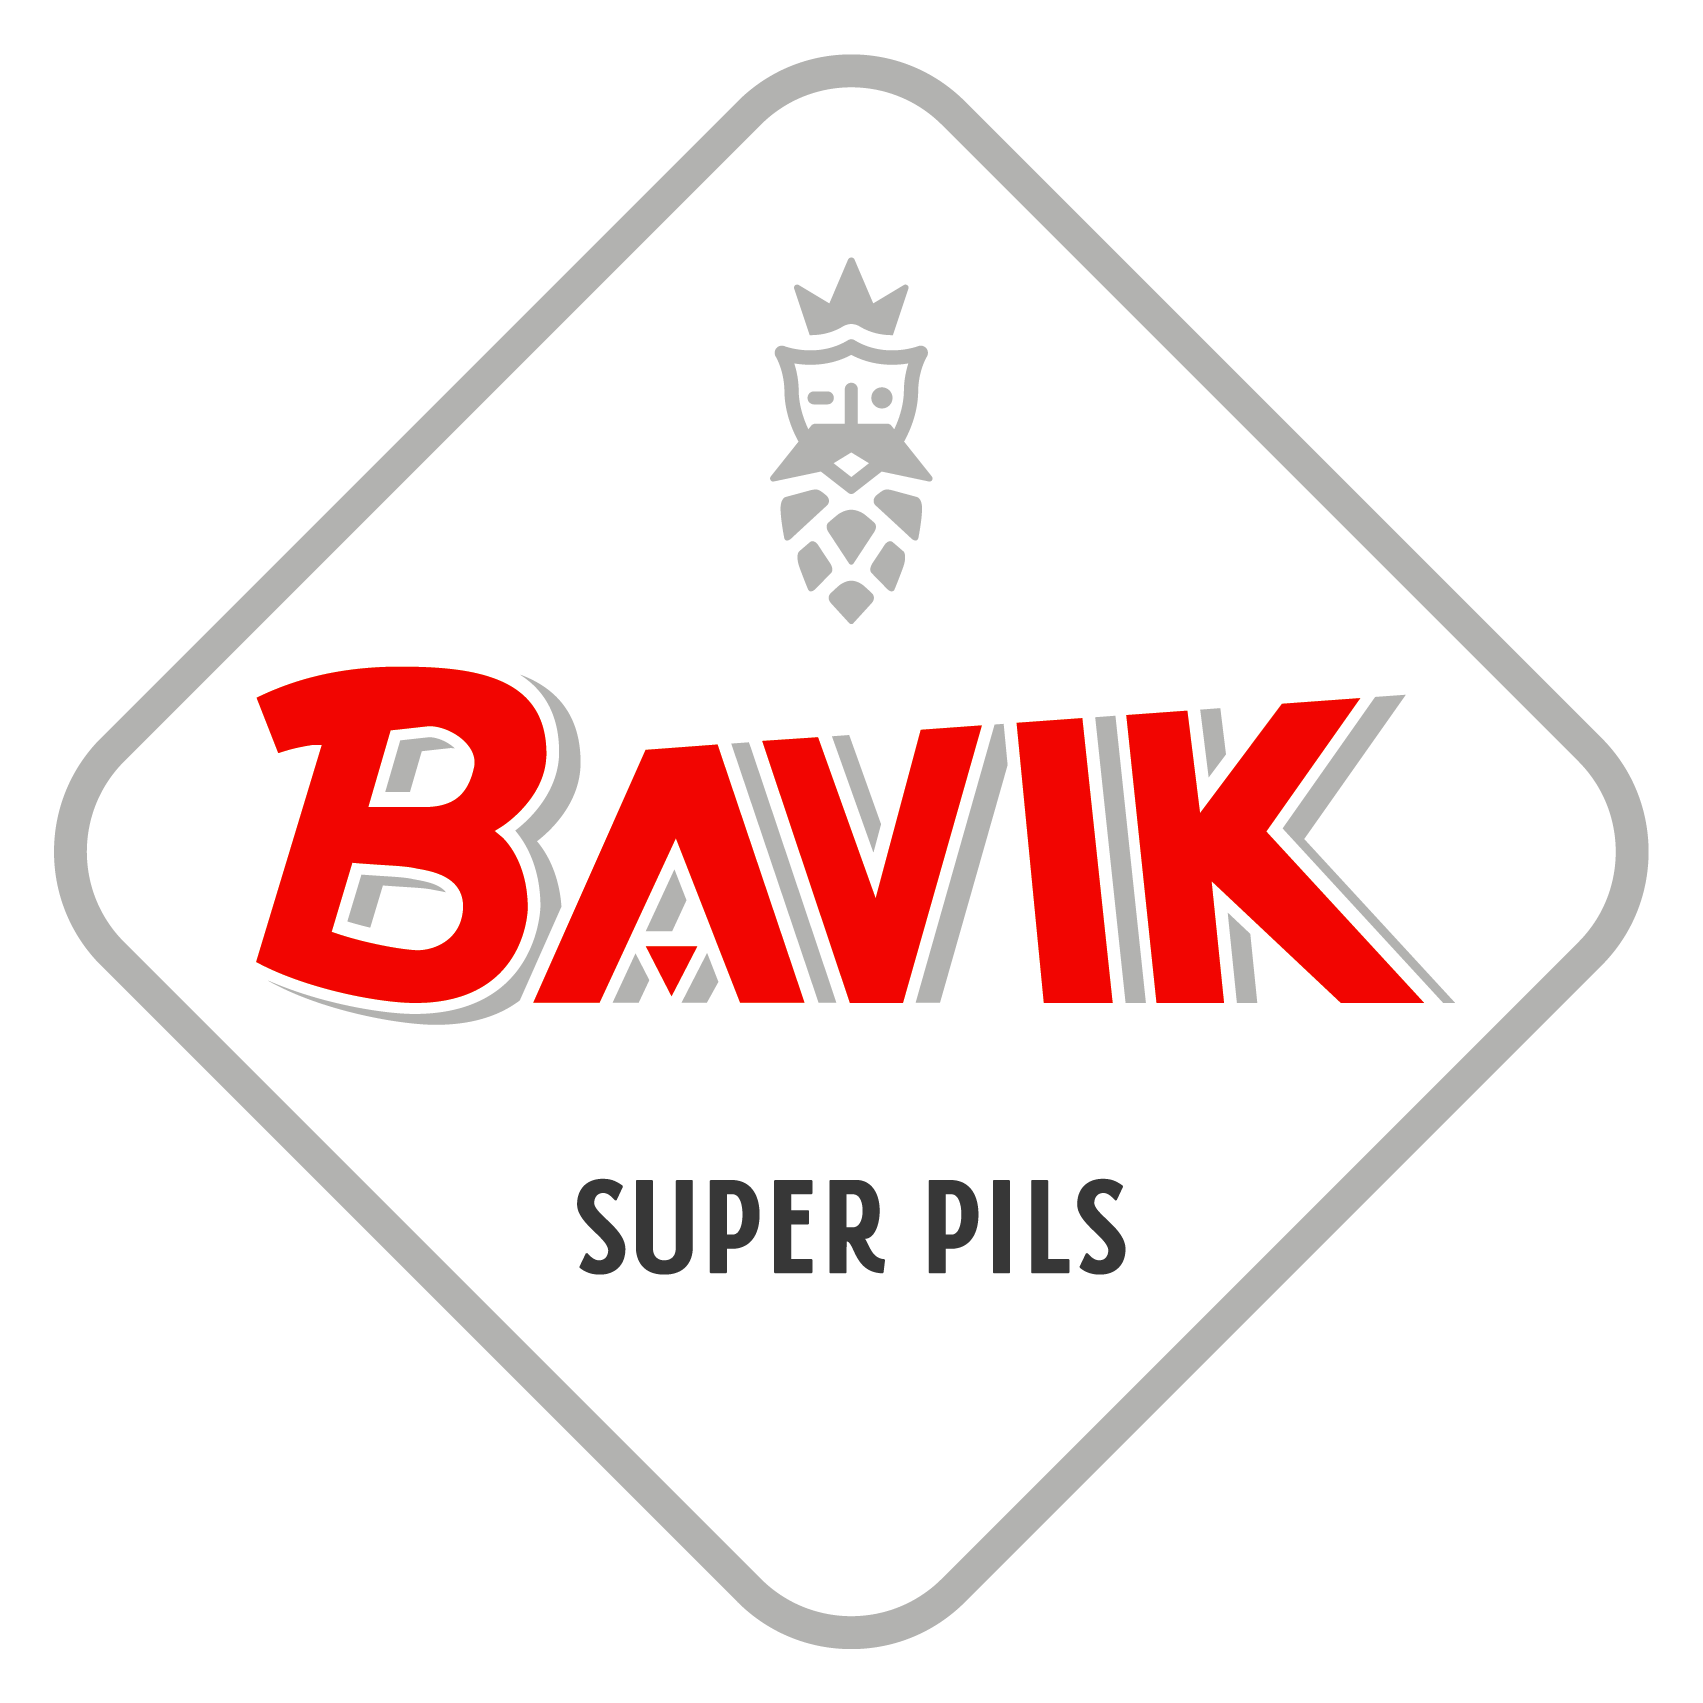 Bavik super pils - beer pong